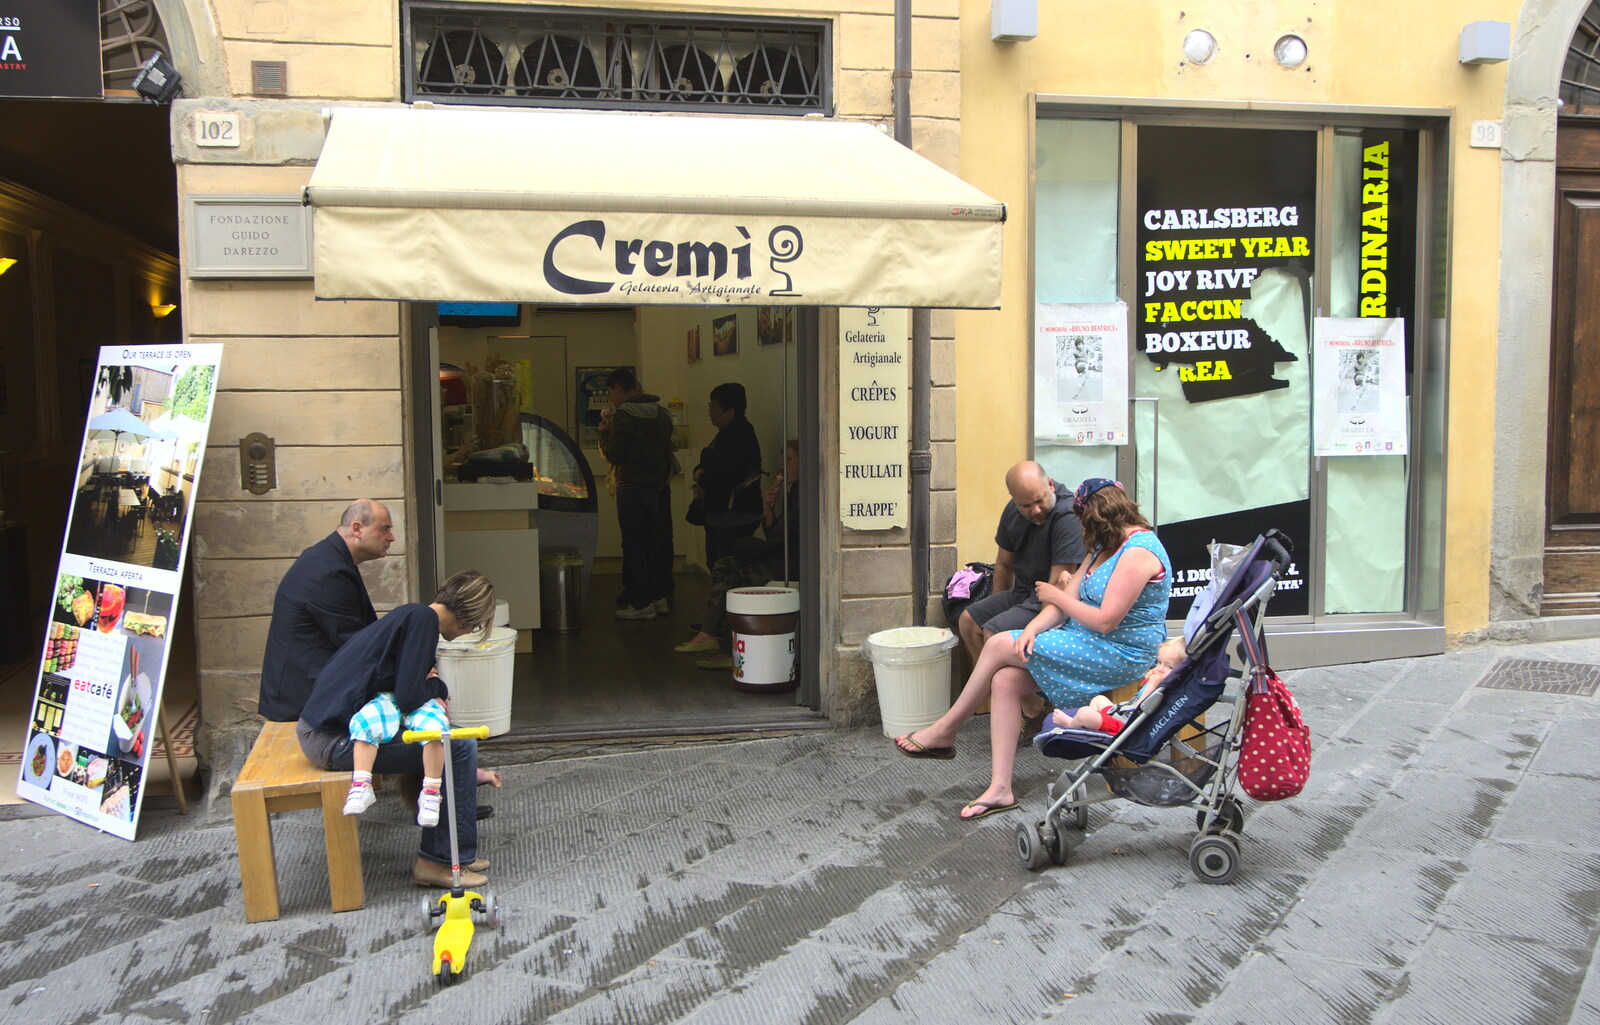 Marconi, Arezzo and the Sagra del Maccherone Festival, Battifolle, Tuscany - 9th June 2013: Outside the Cremi Gelateria